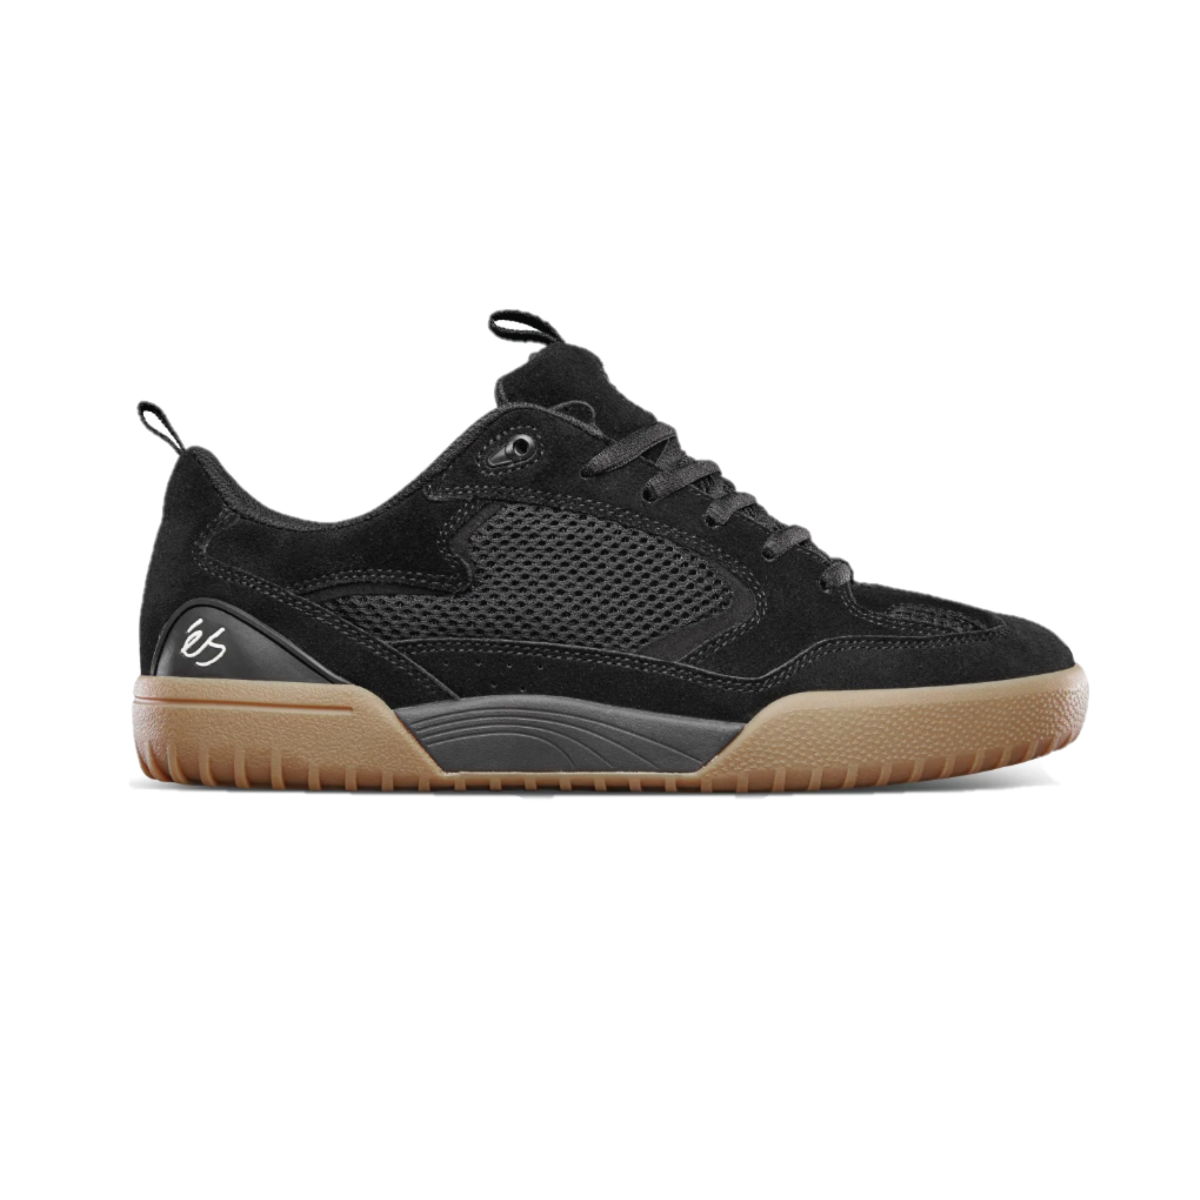 ÉS 5101000174/964 QUATRO MN'S (Medium) Black/Gum Suede & Mesh Skate Shoes